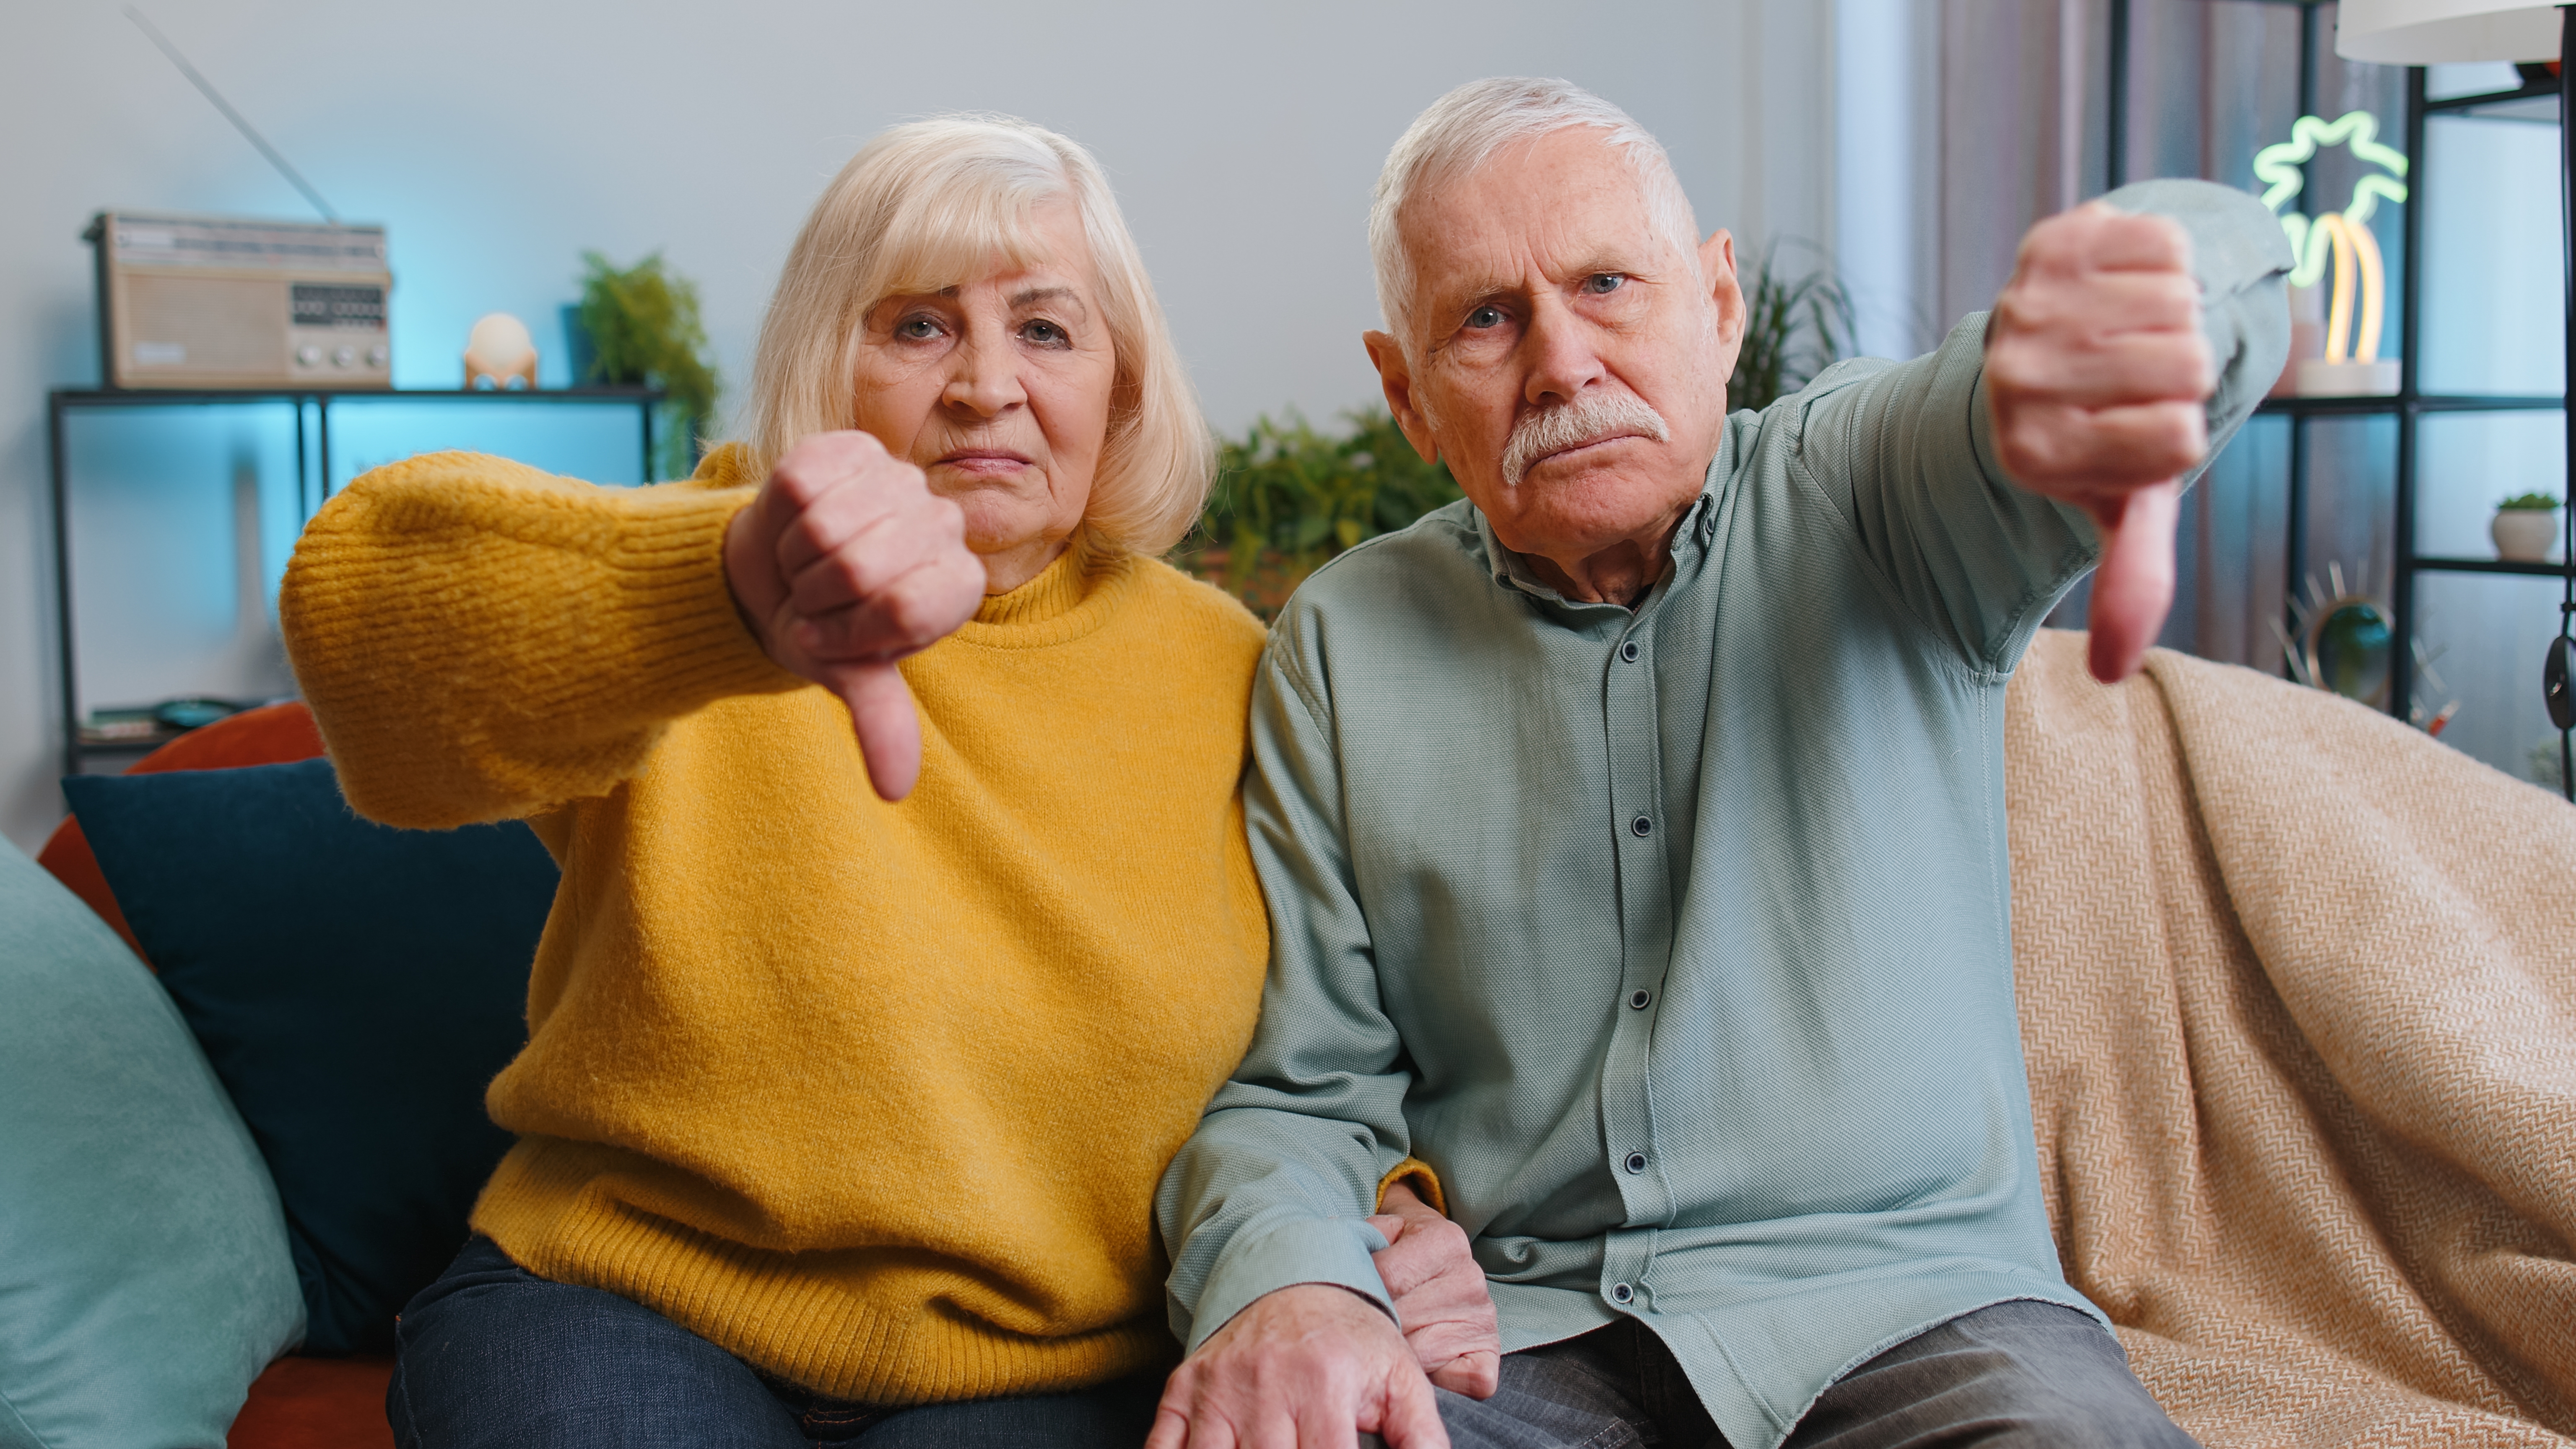 Älteres Paar mit Daumen-nach-unten-Zeichen | Quelle: Shutterstock